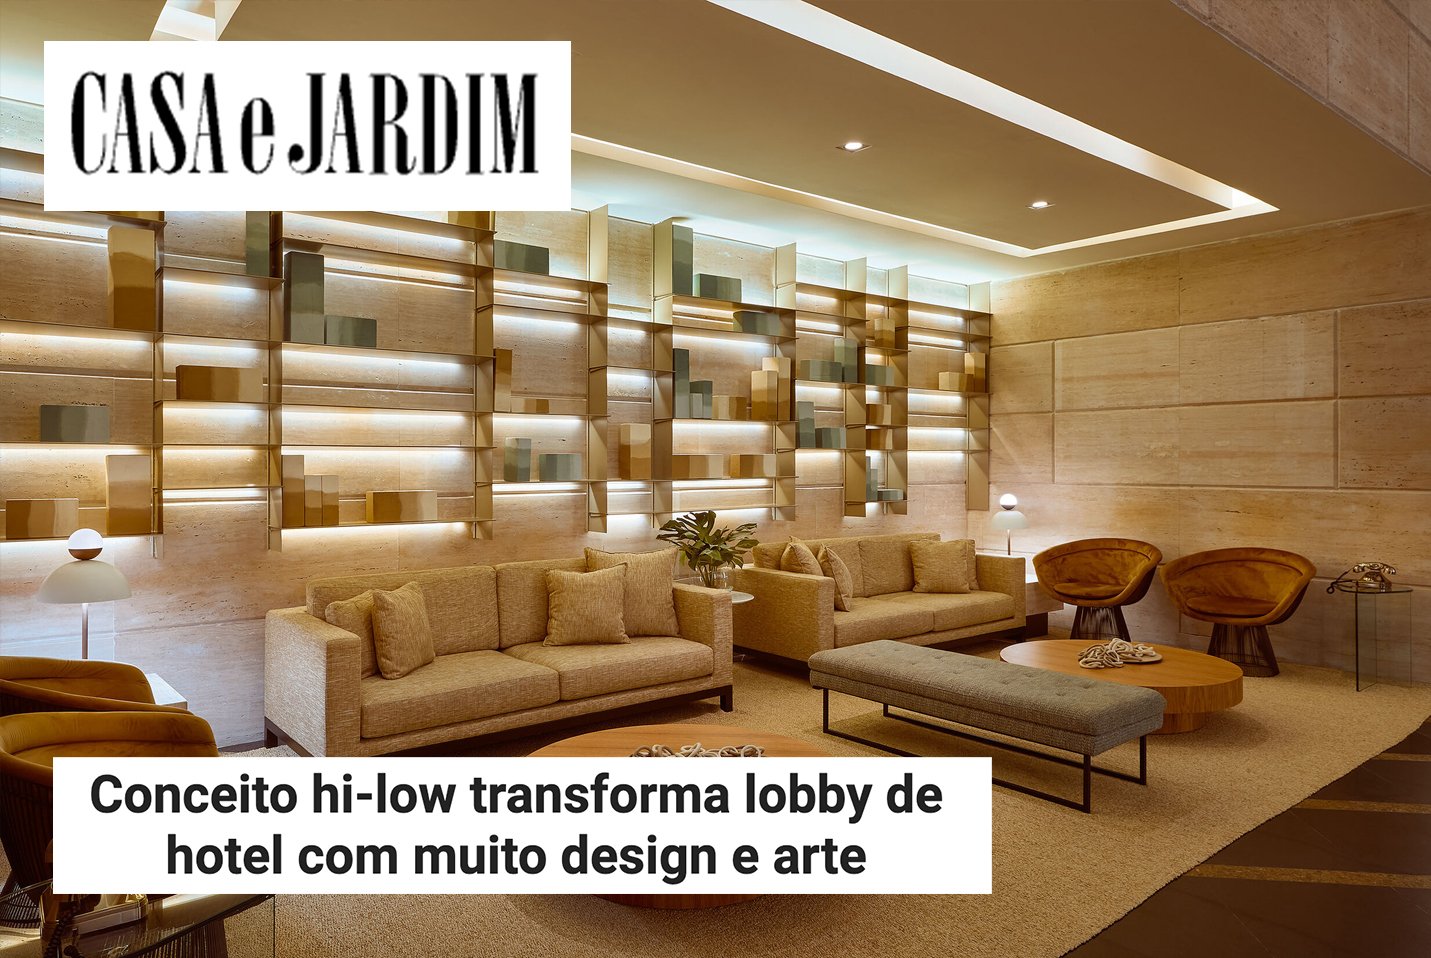 02/03/21 - Conceito hi-low transforma lobby de hotel com muito design e arte